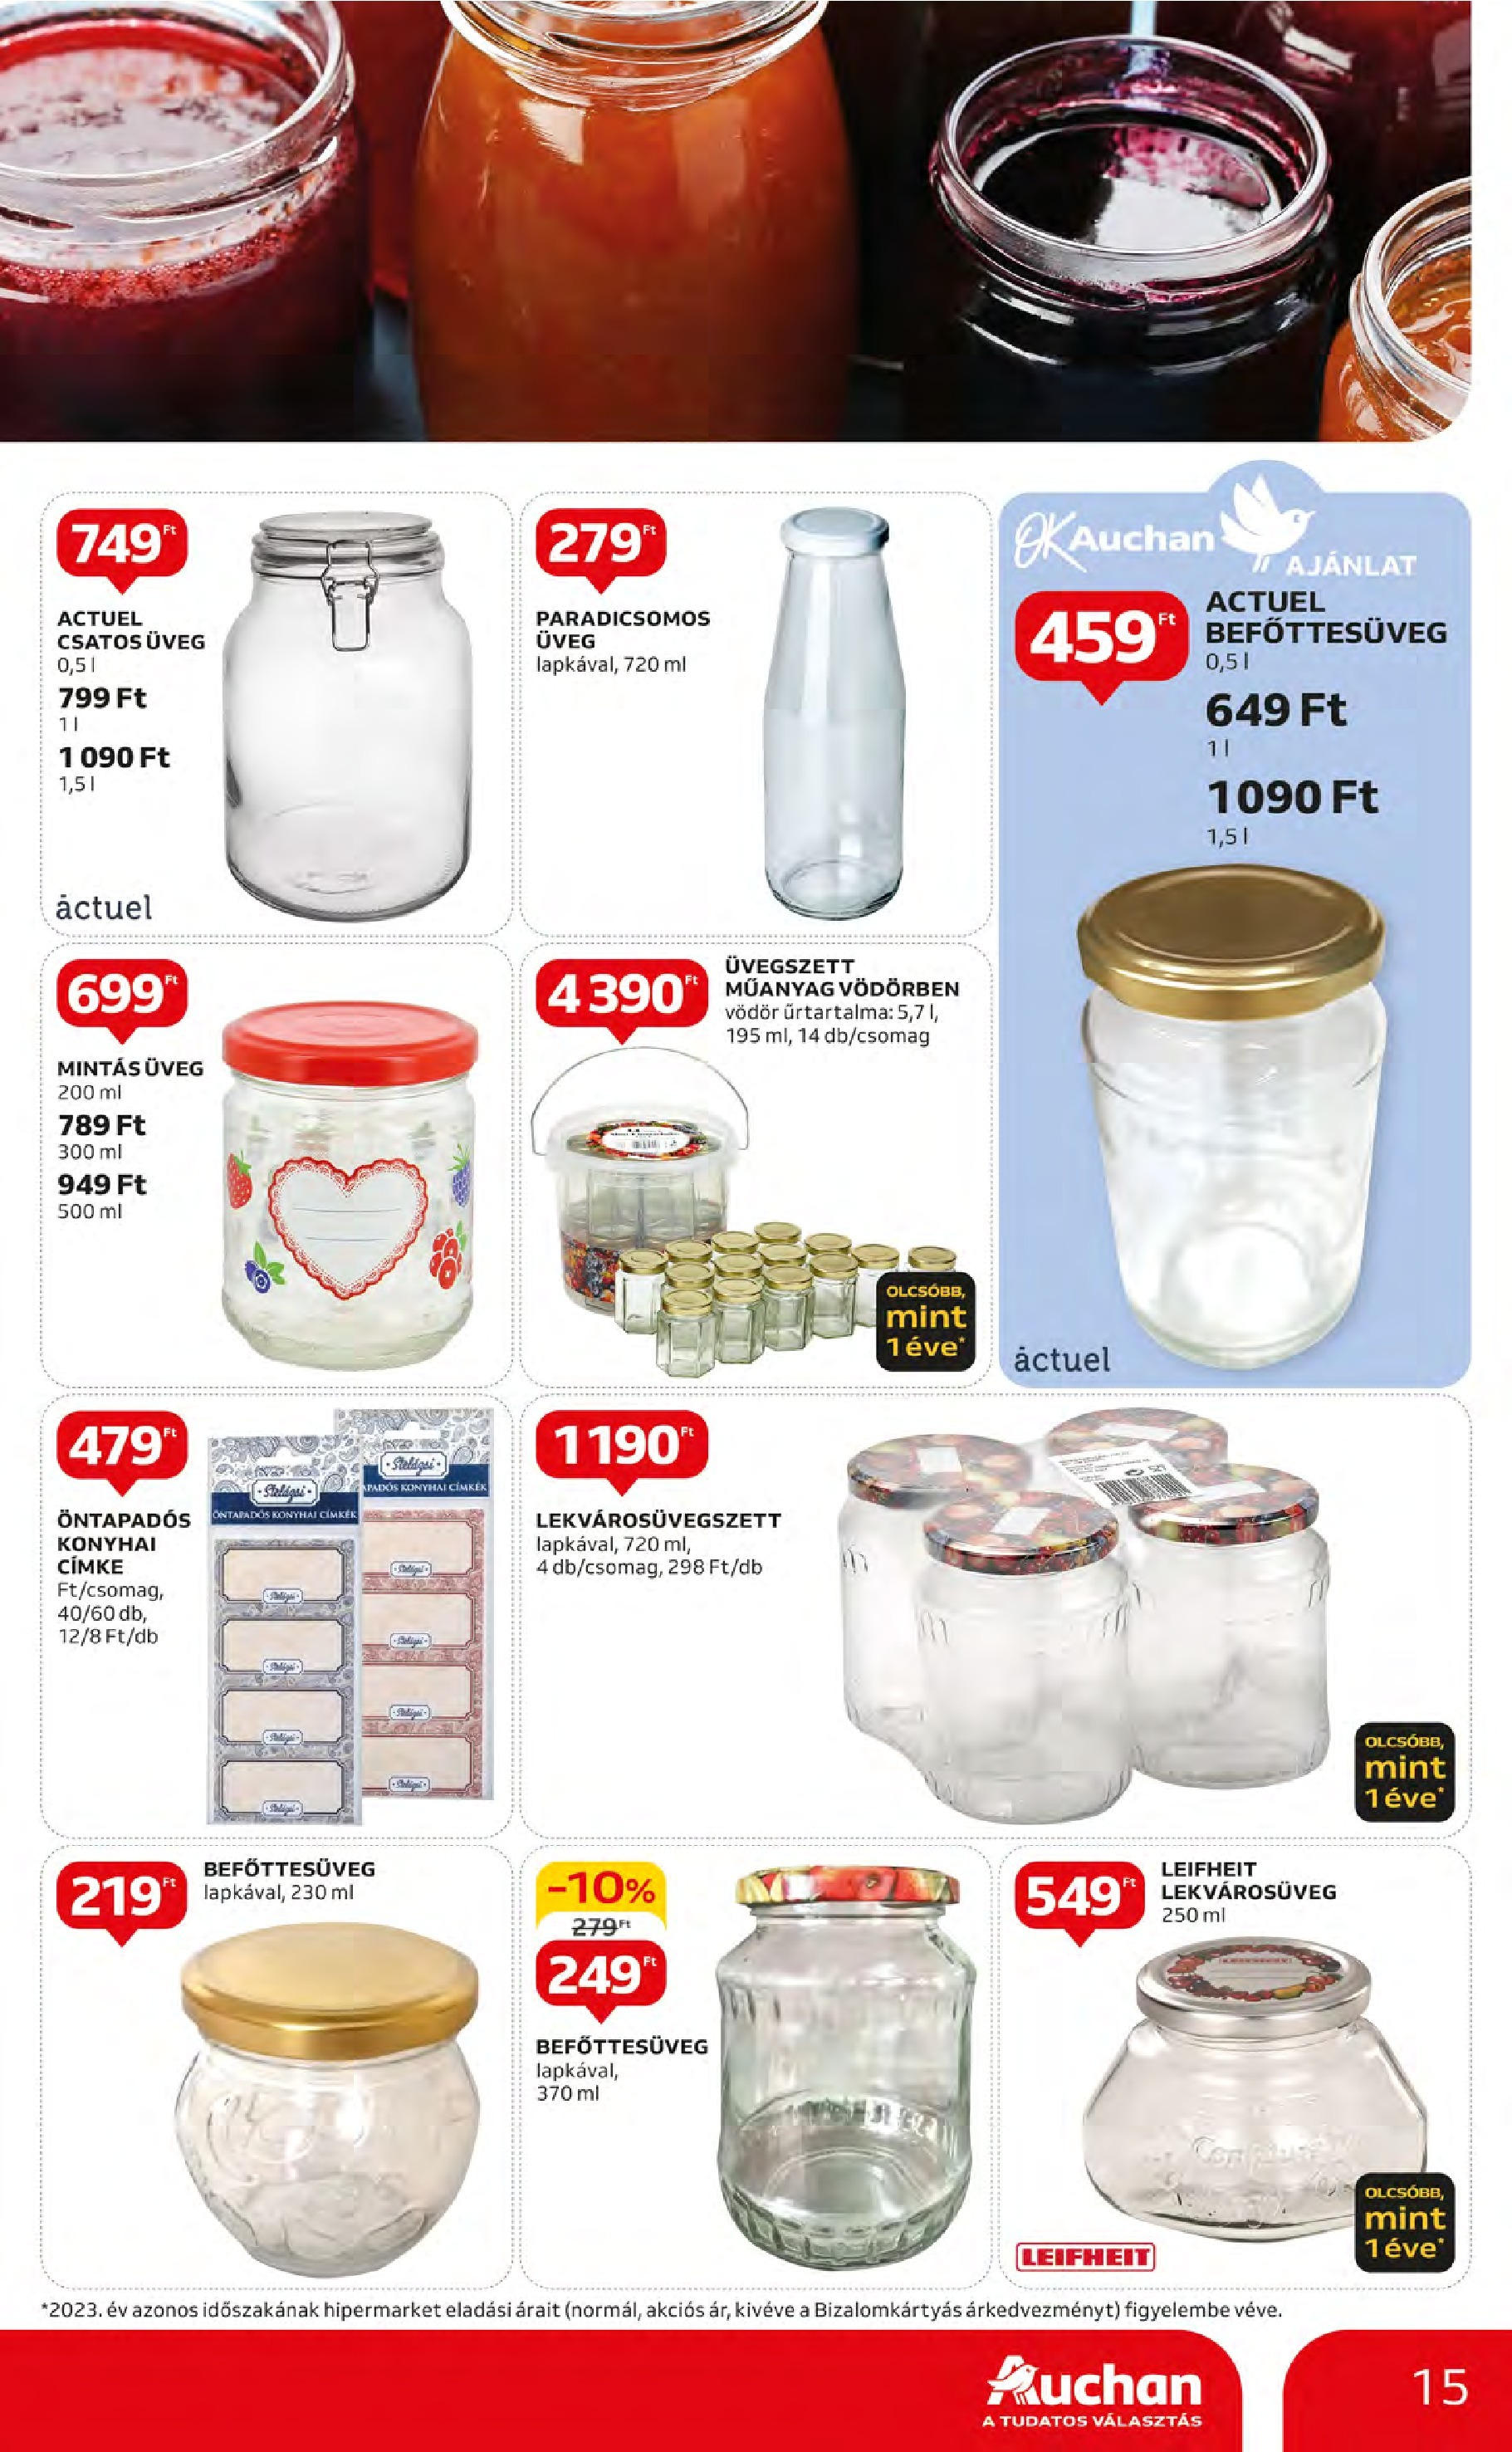 Auchan  Akciós újság - 2024.05.09. -tól/töl > akció, szórólap 🛍️ | Oldal: 15 | Termékek: Befőttesüveg